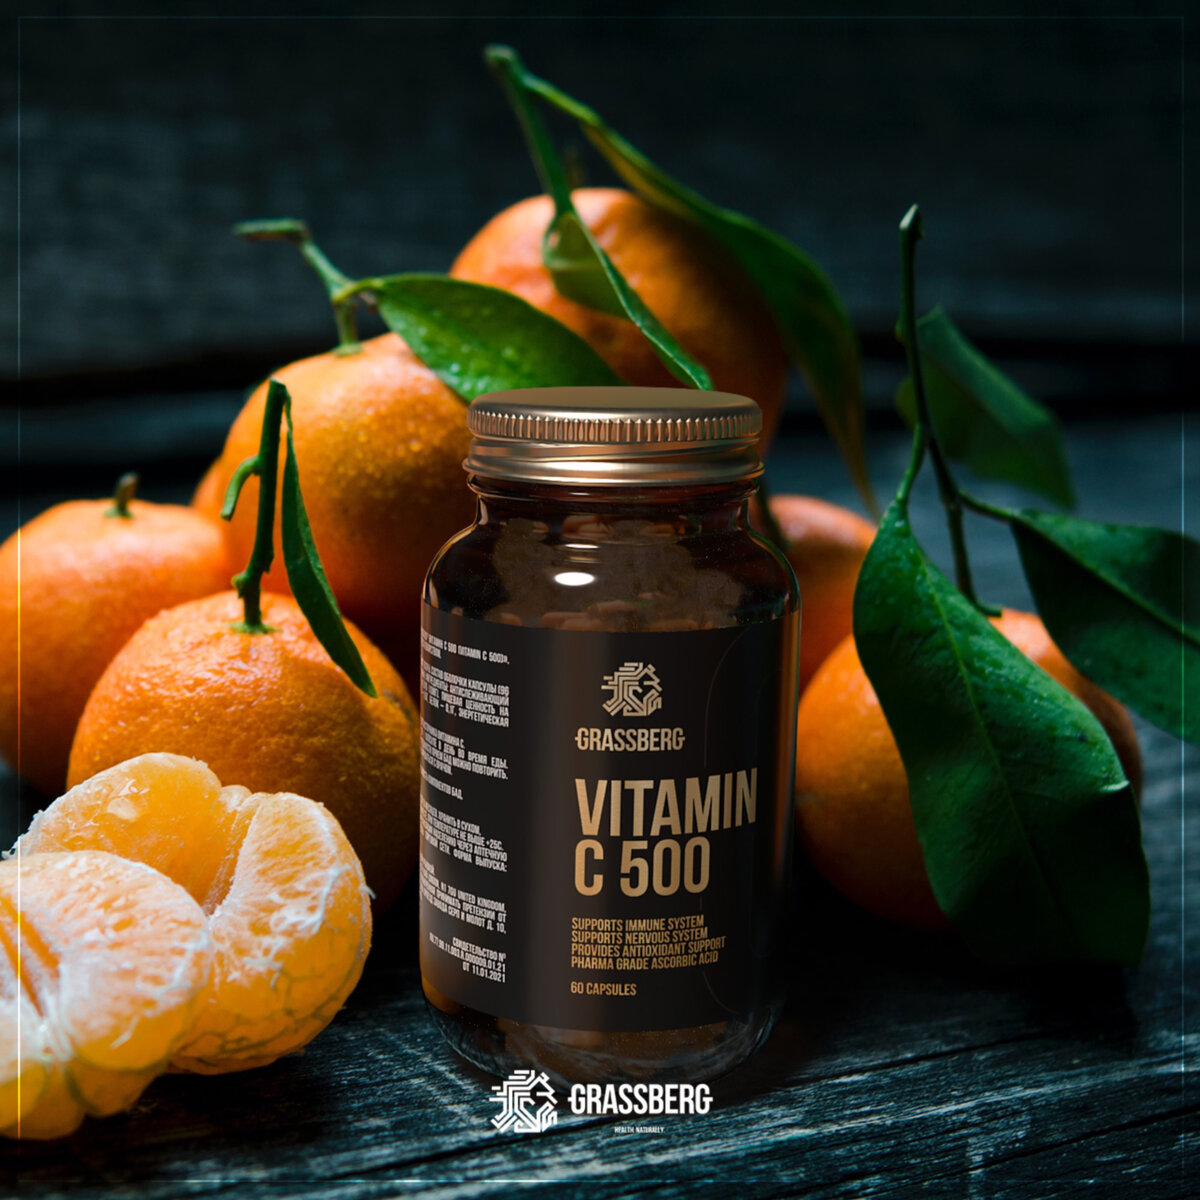 Регулярный прием витамина C, входящего в состав комплекса способствует: - Нормальному функционированию иммунной системы - Поддержанию нормальной функции иммунной системы во время и после интенсивных